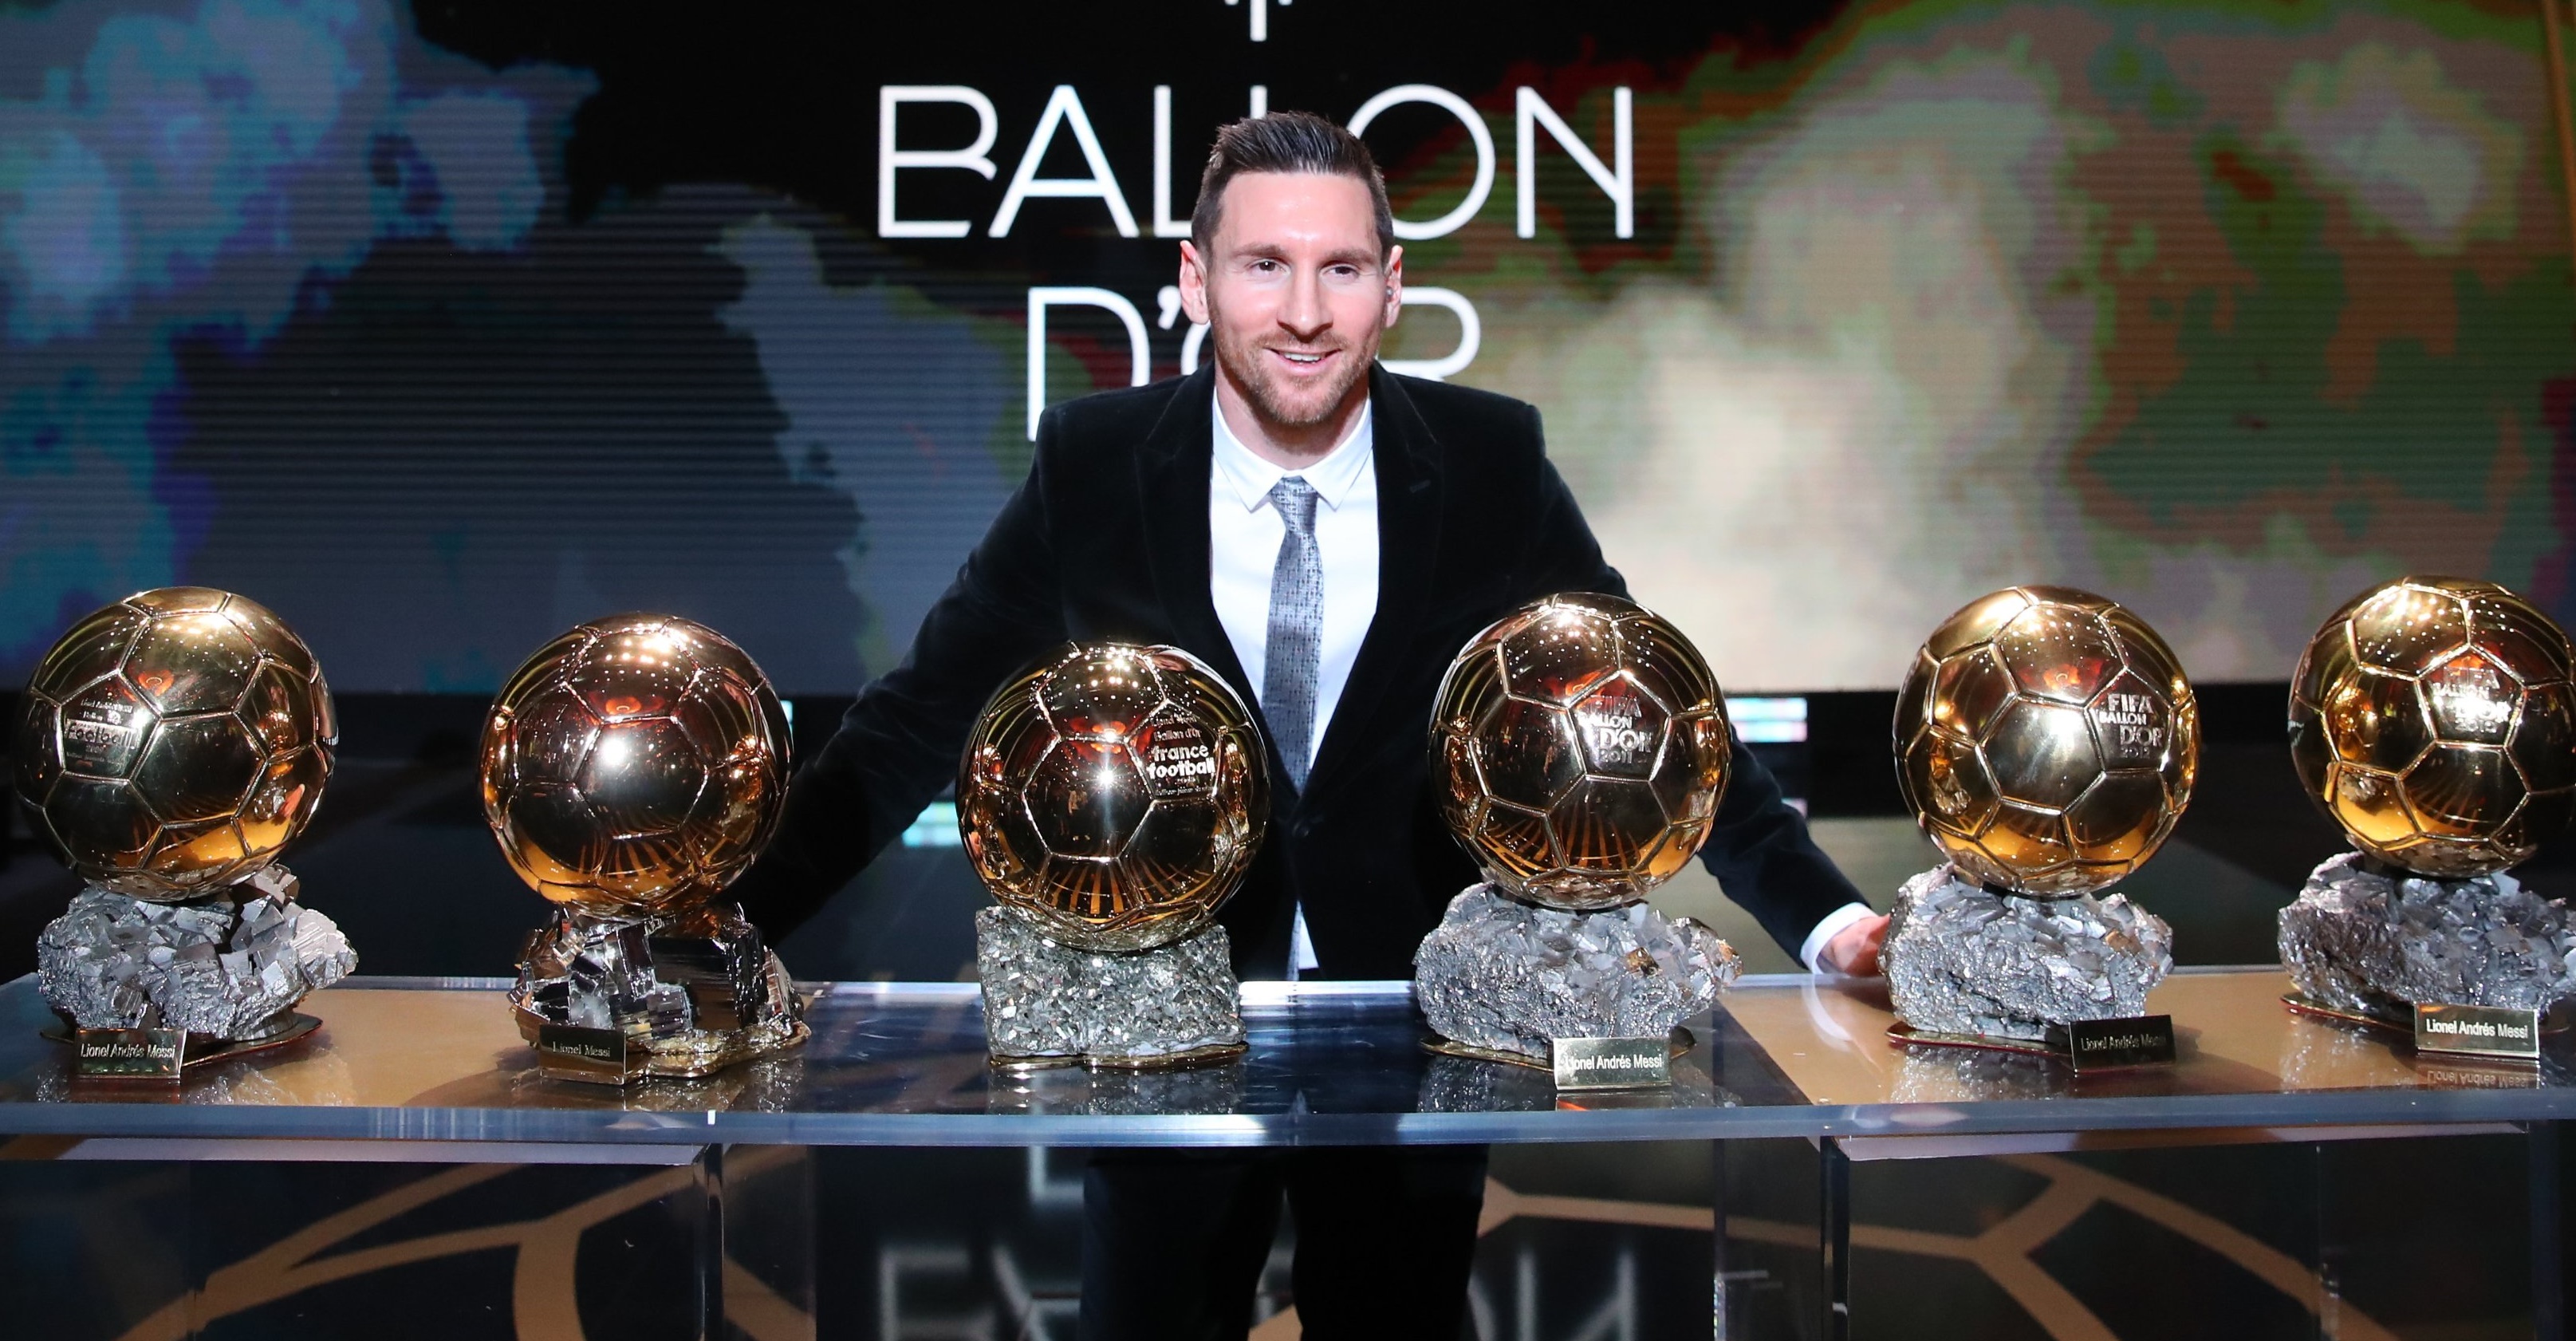 Messi gana el balón de oro. Foto: Twtter